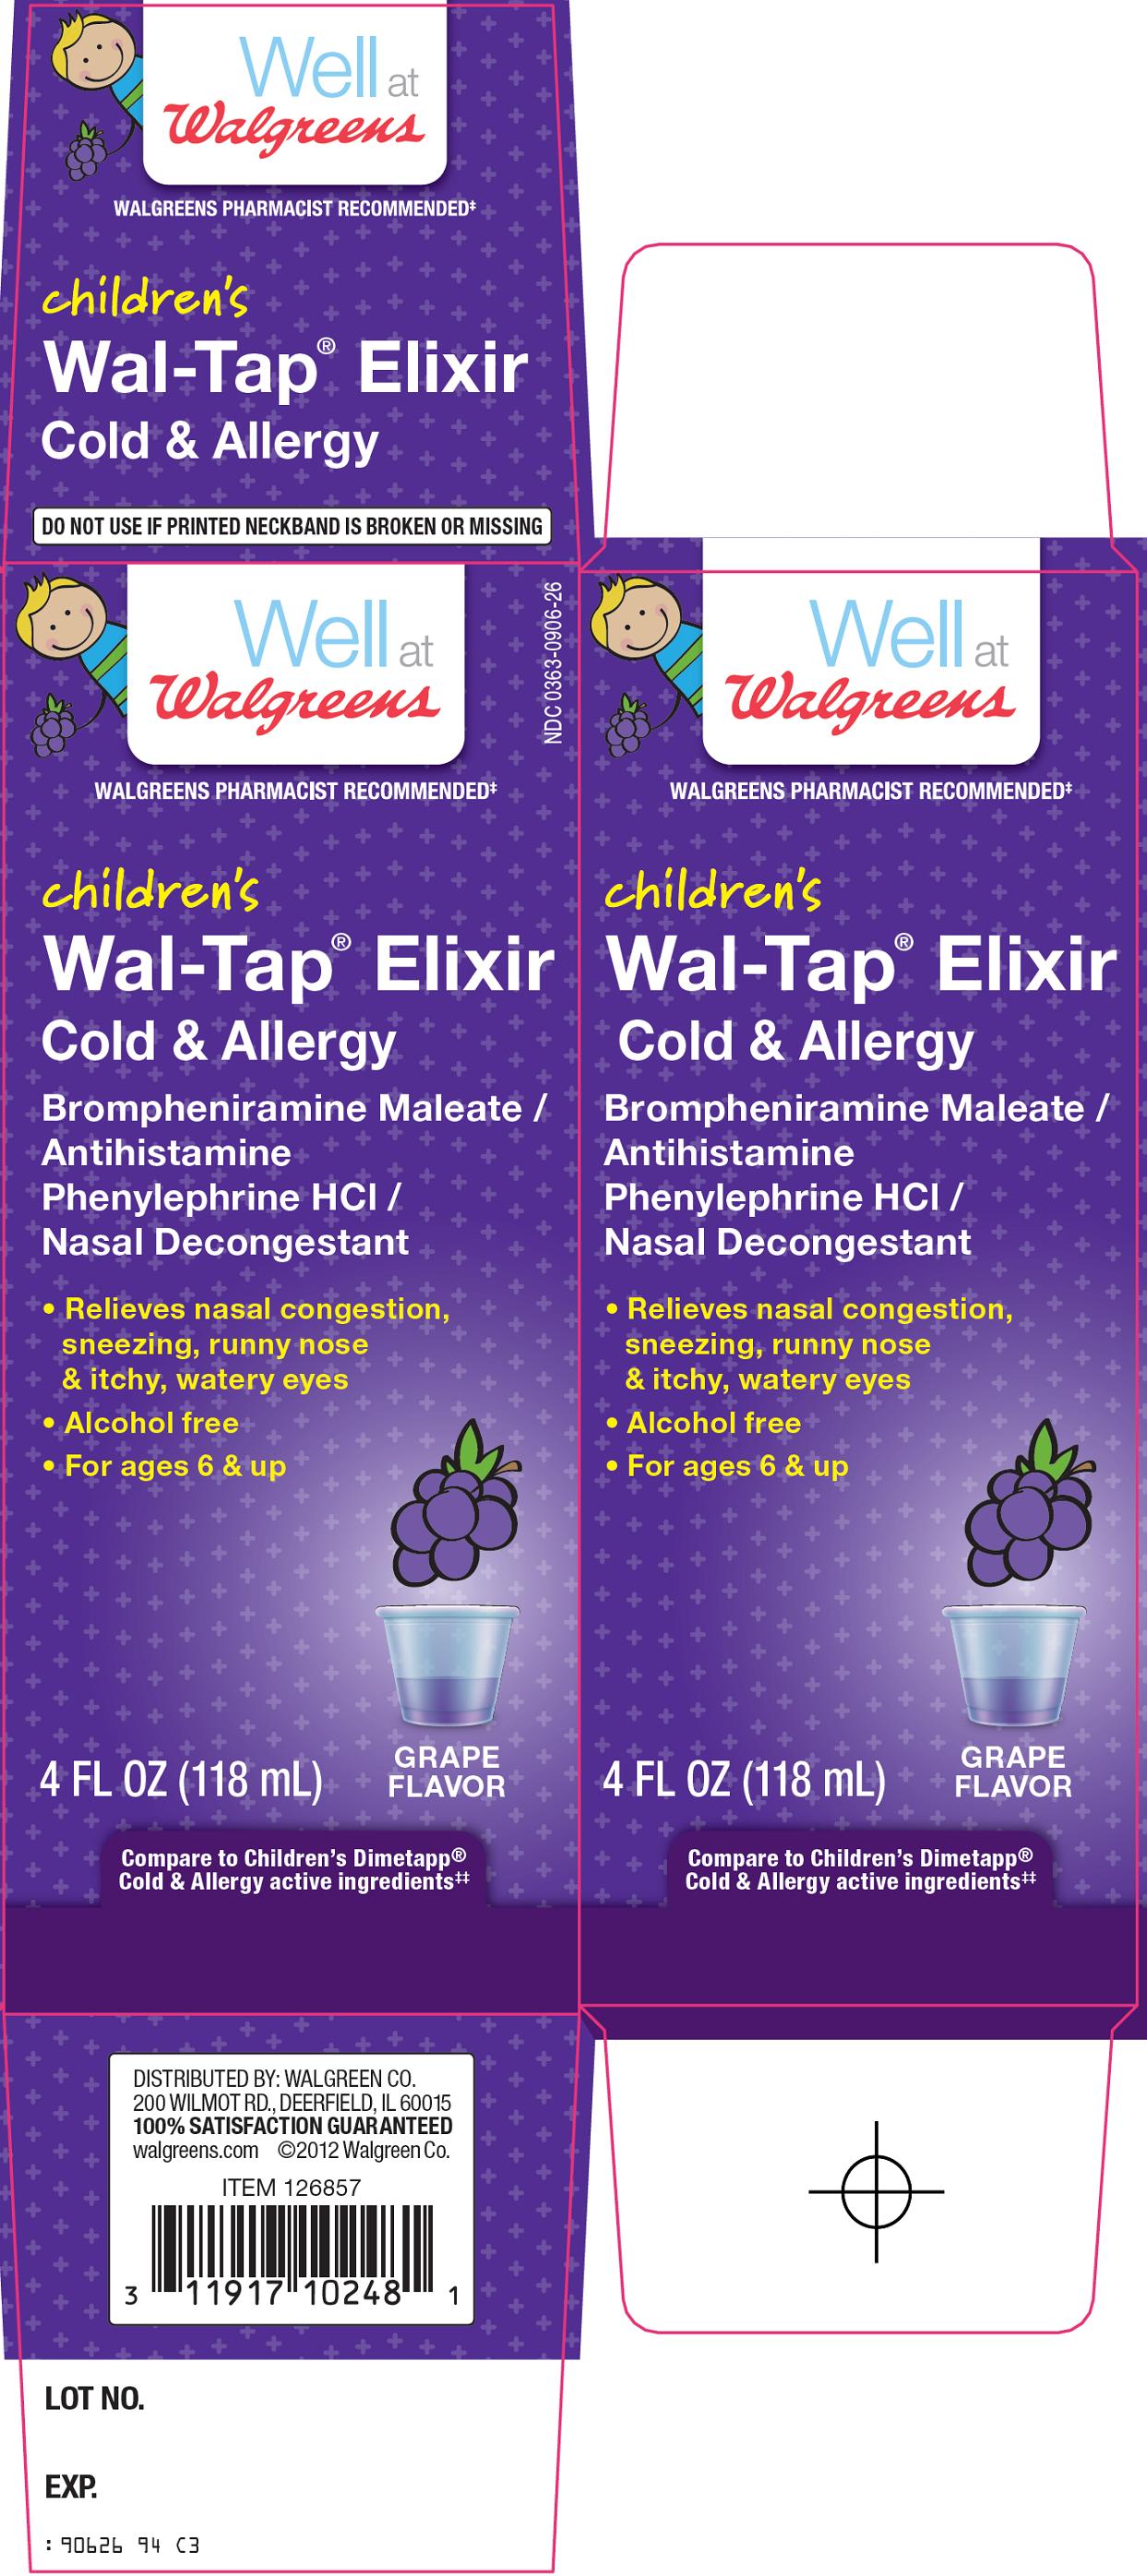 Children's Wal-Tap Elixir Carton Image 1